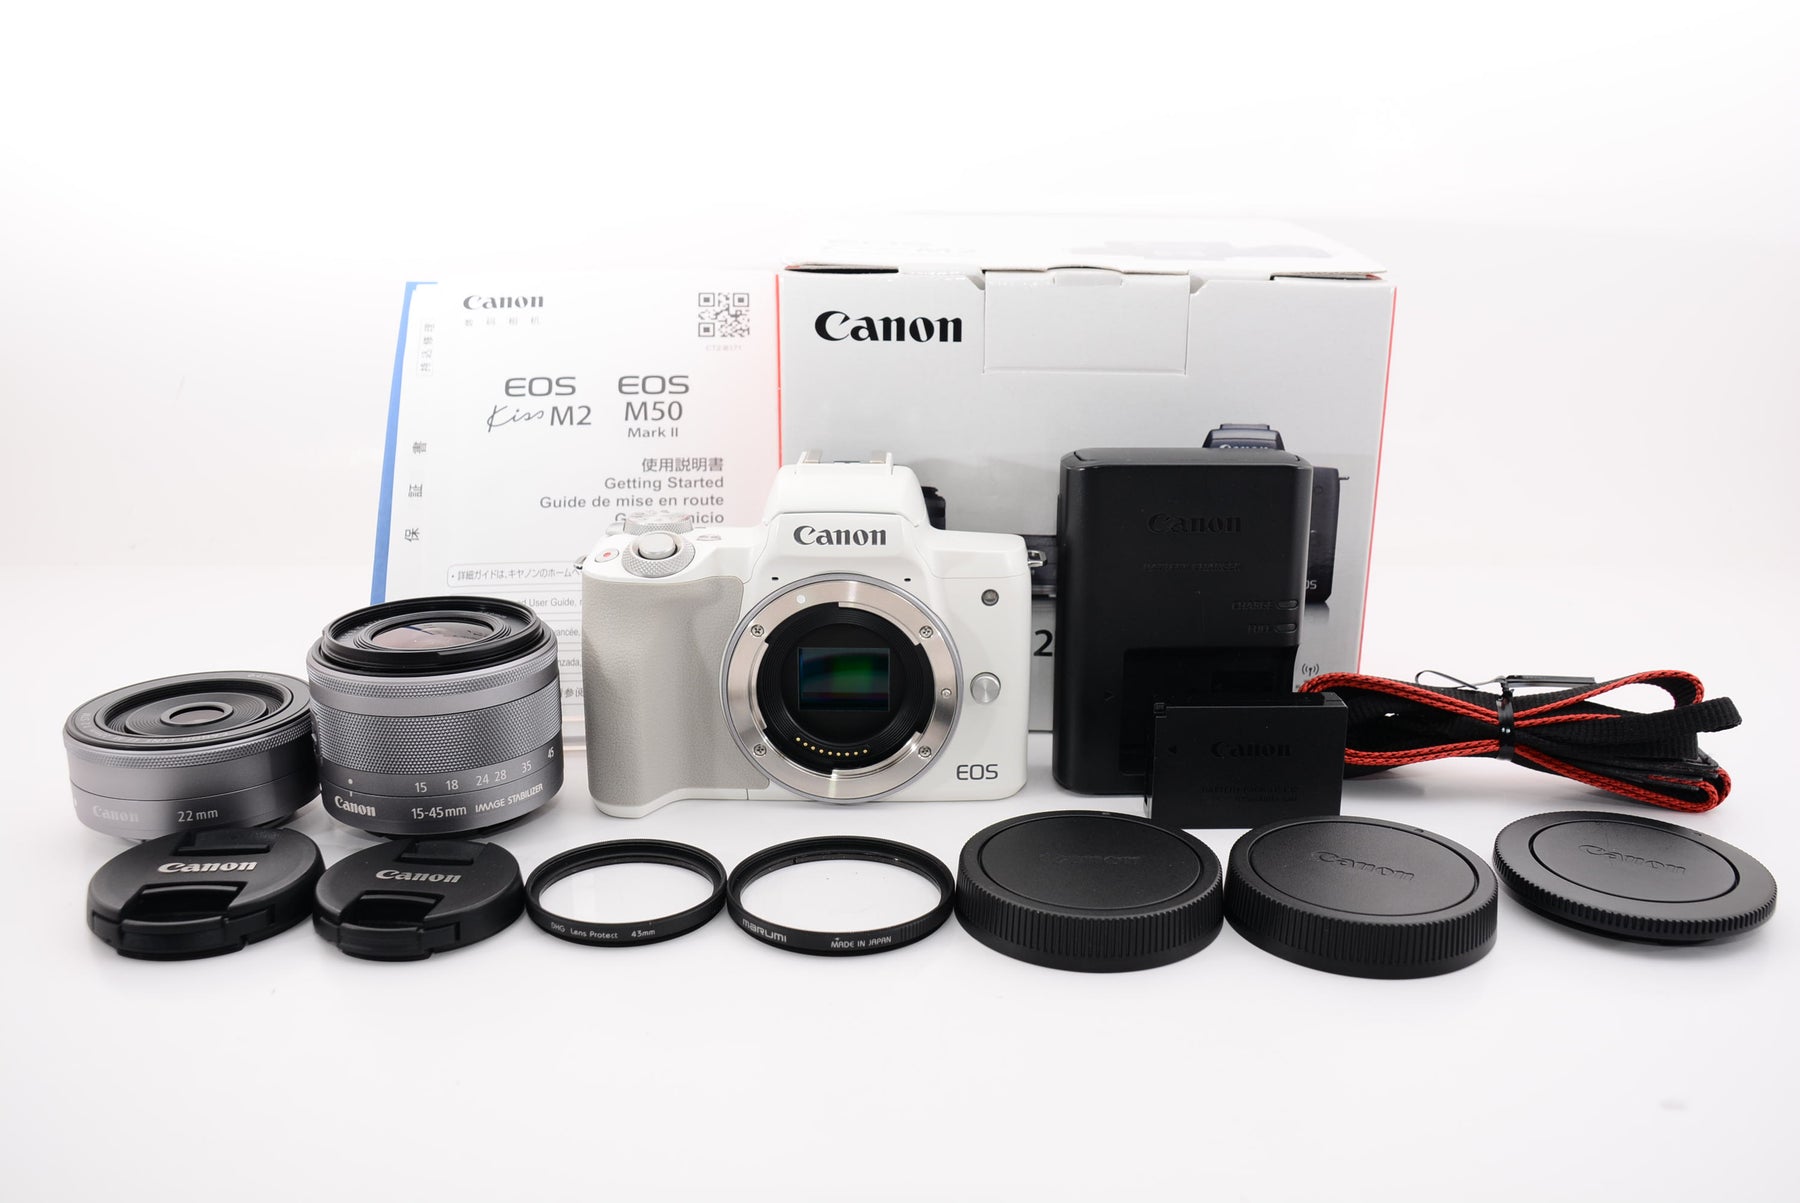 EOSM3メーカー型番『美品』Canon EOS M3 Wレンズキット2 BK 箱あり　ミラーレス